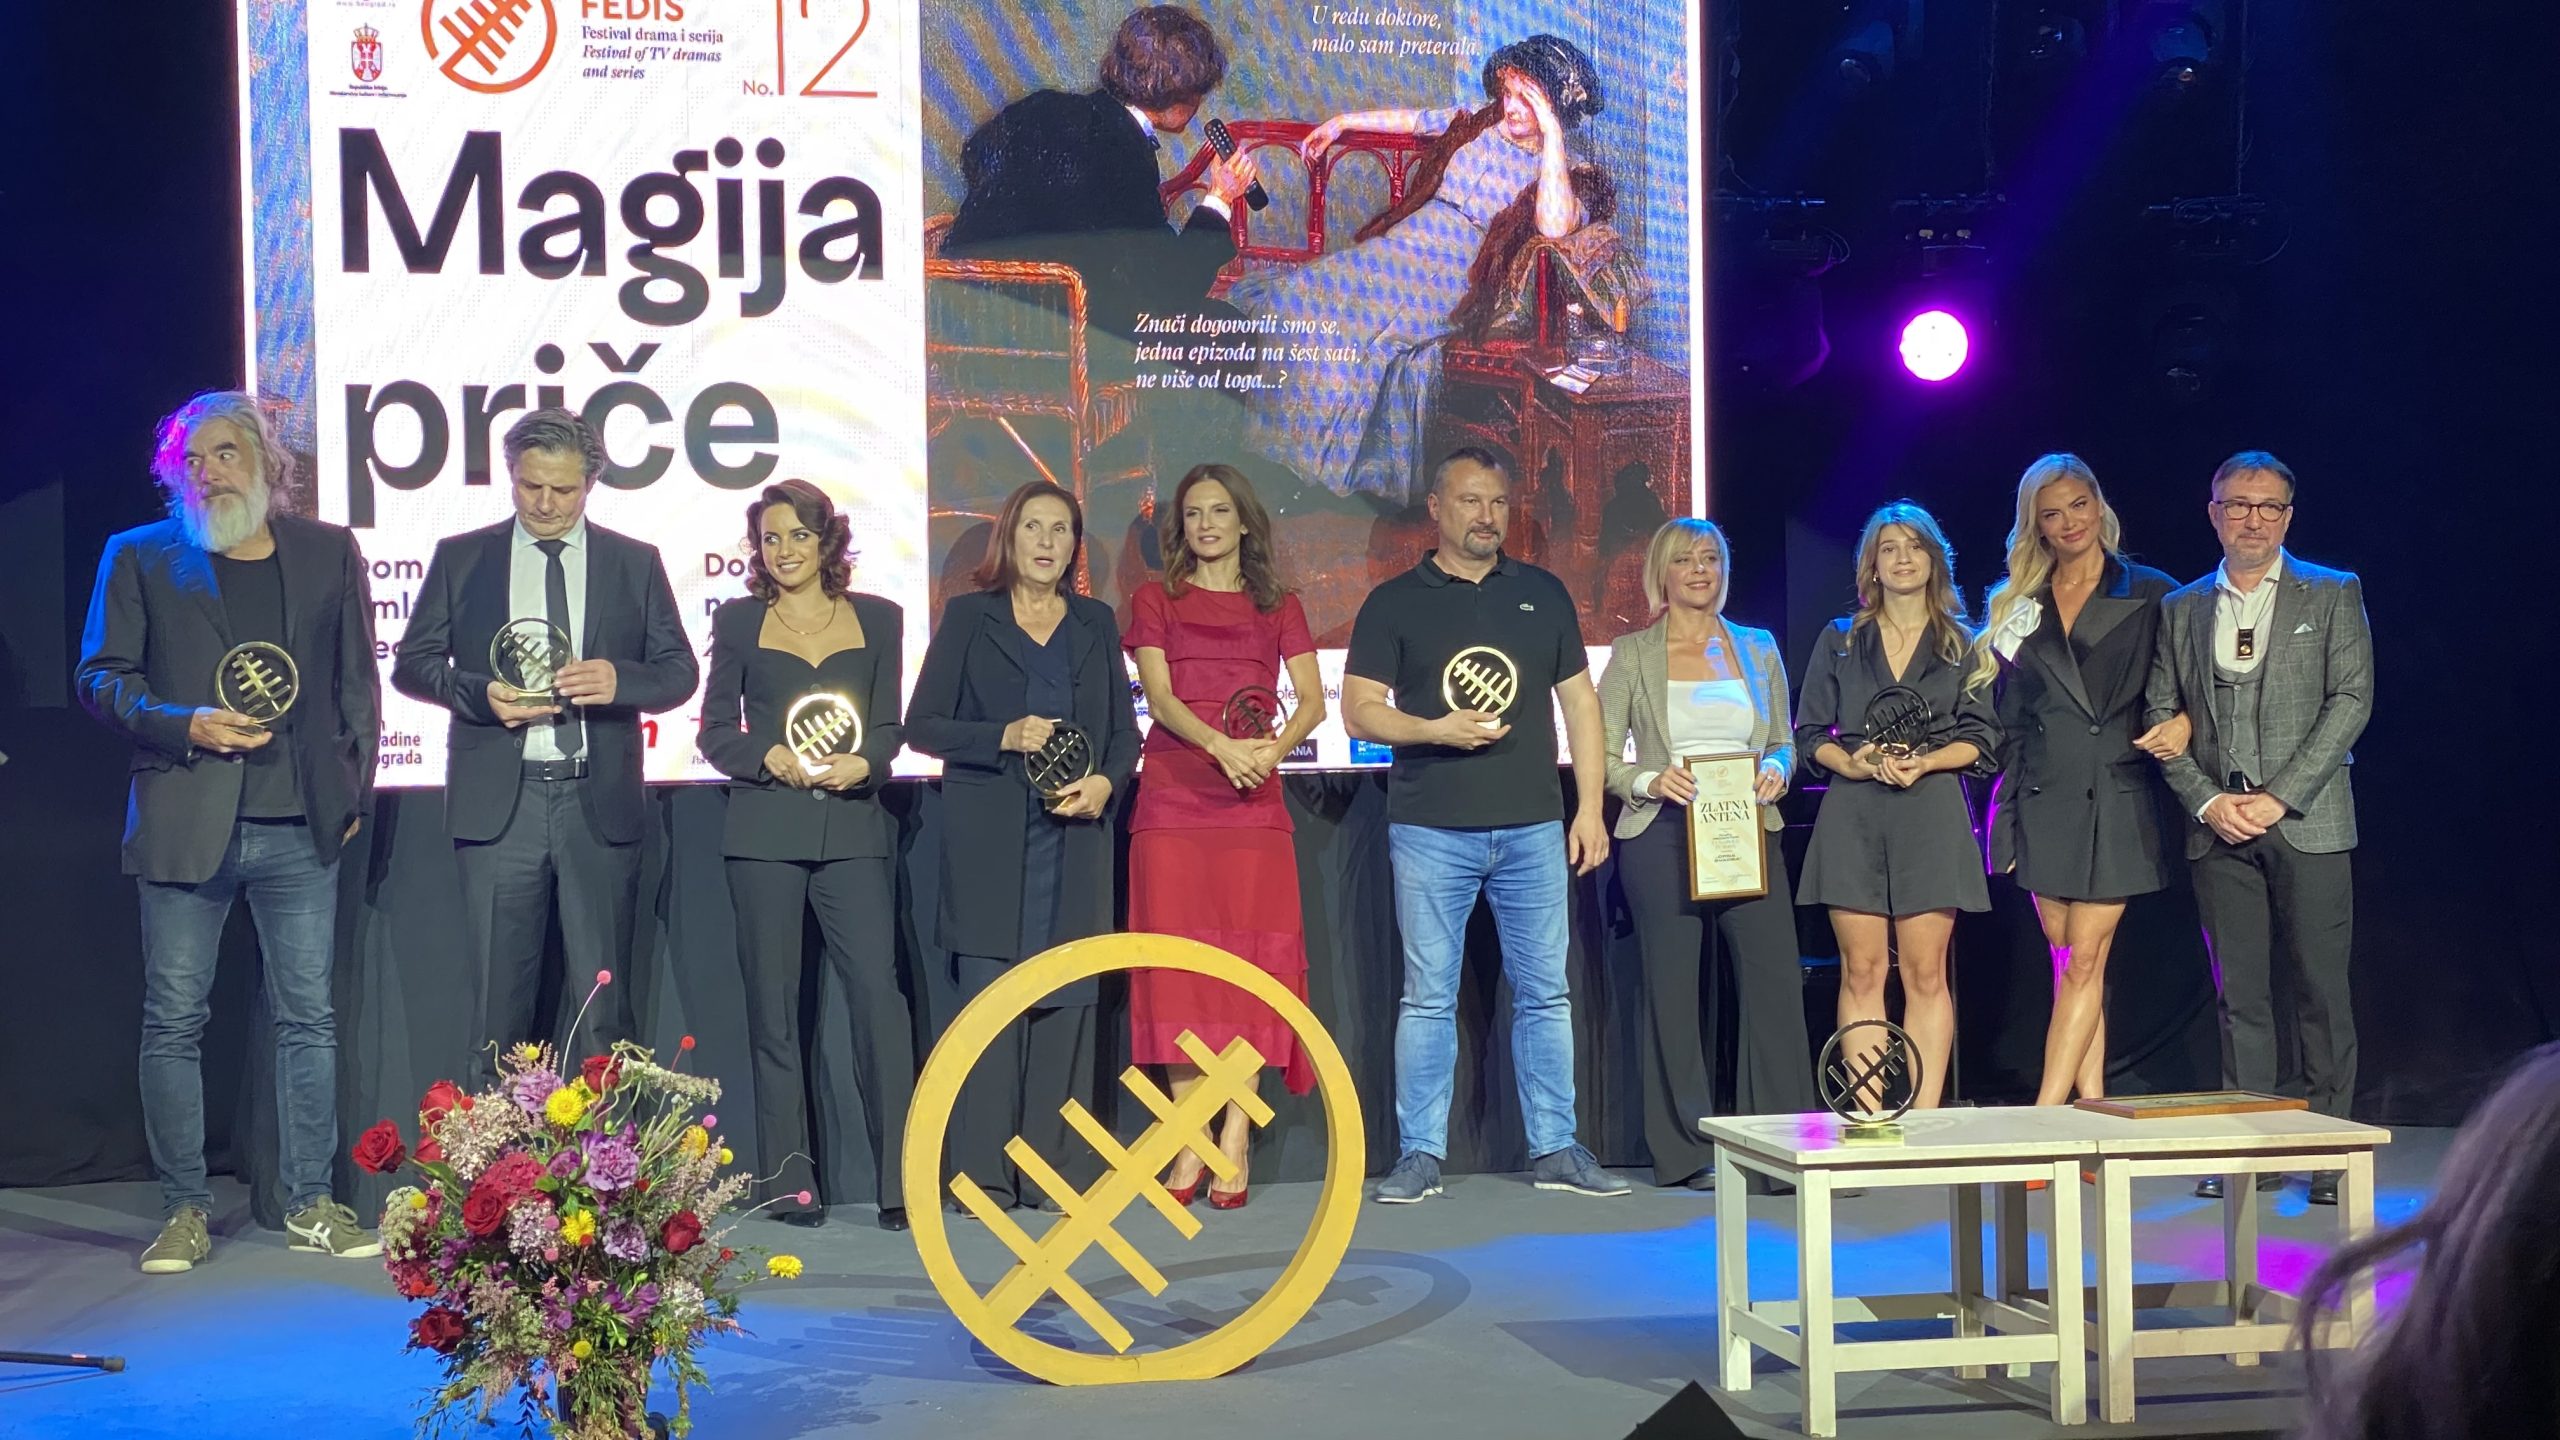 Dobitnici nagrada na festivalu FEDIS 2022. za tv ostvarenja u produkciji Telekom Srbija